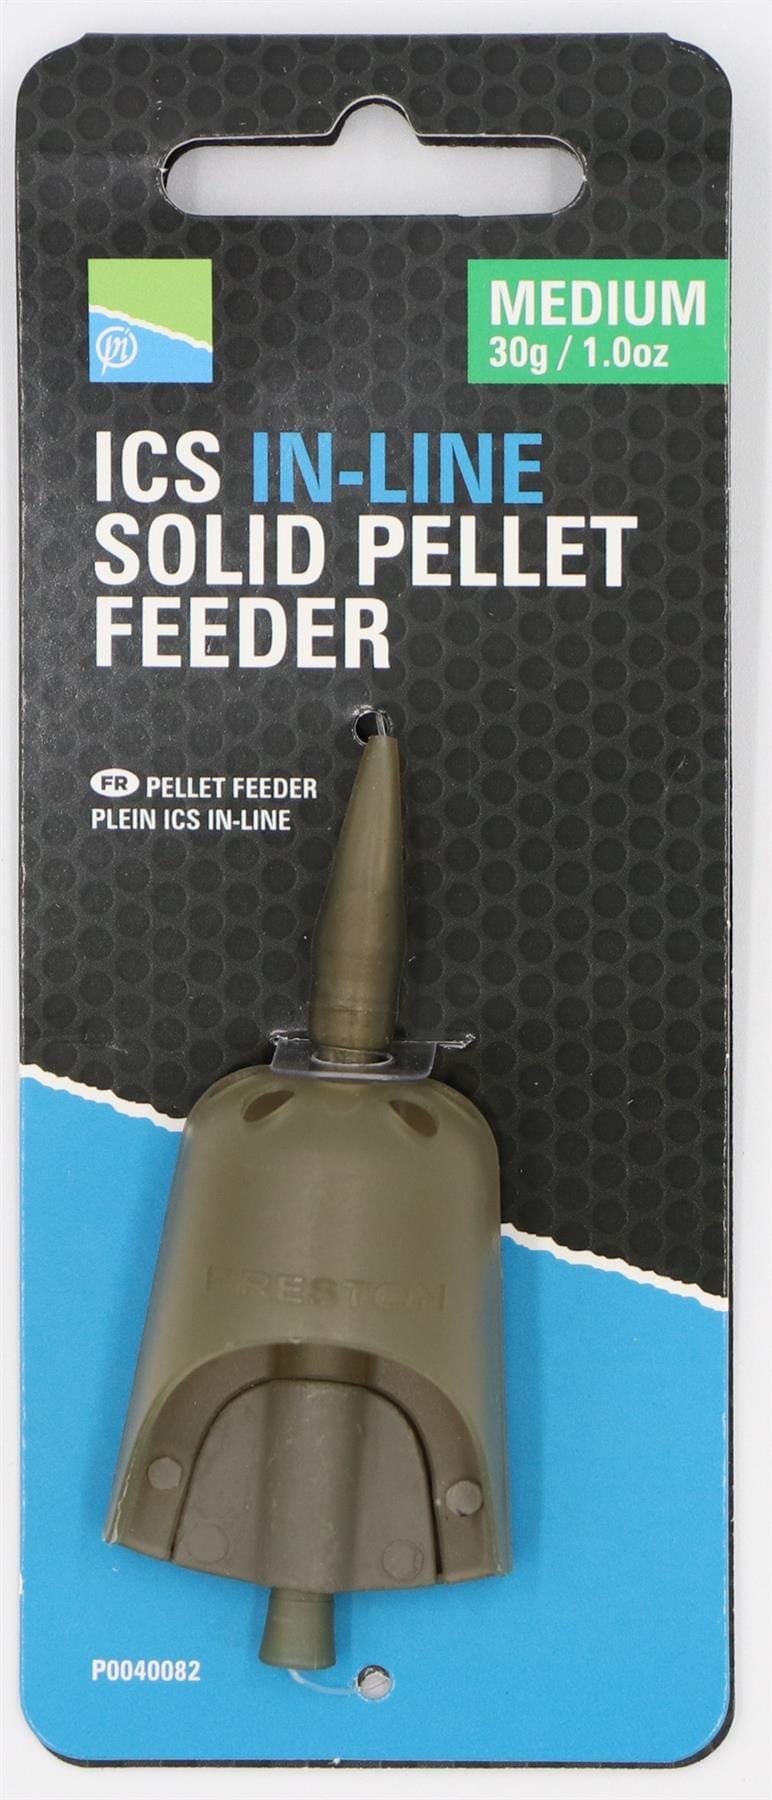 Preston Innovations ICS In-Line Solid Pellet Feeder - Medium 30g.